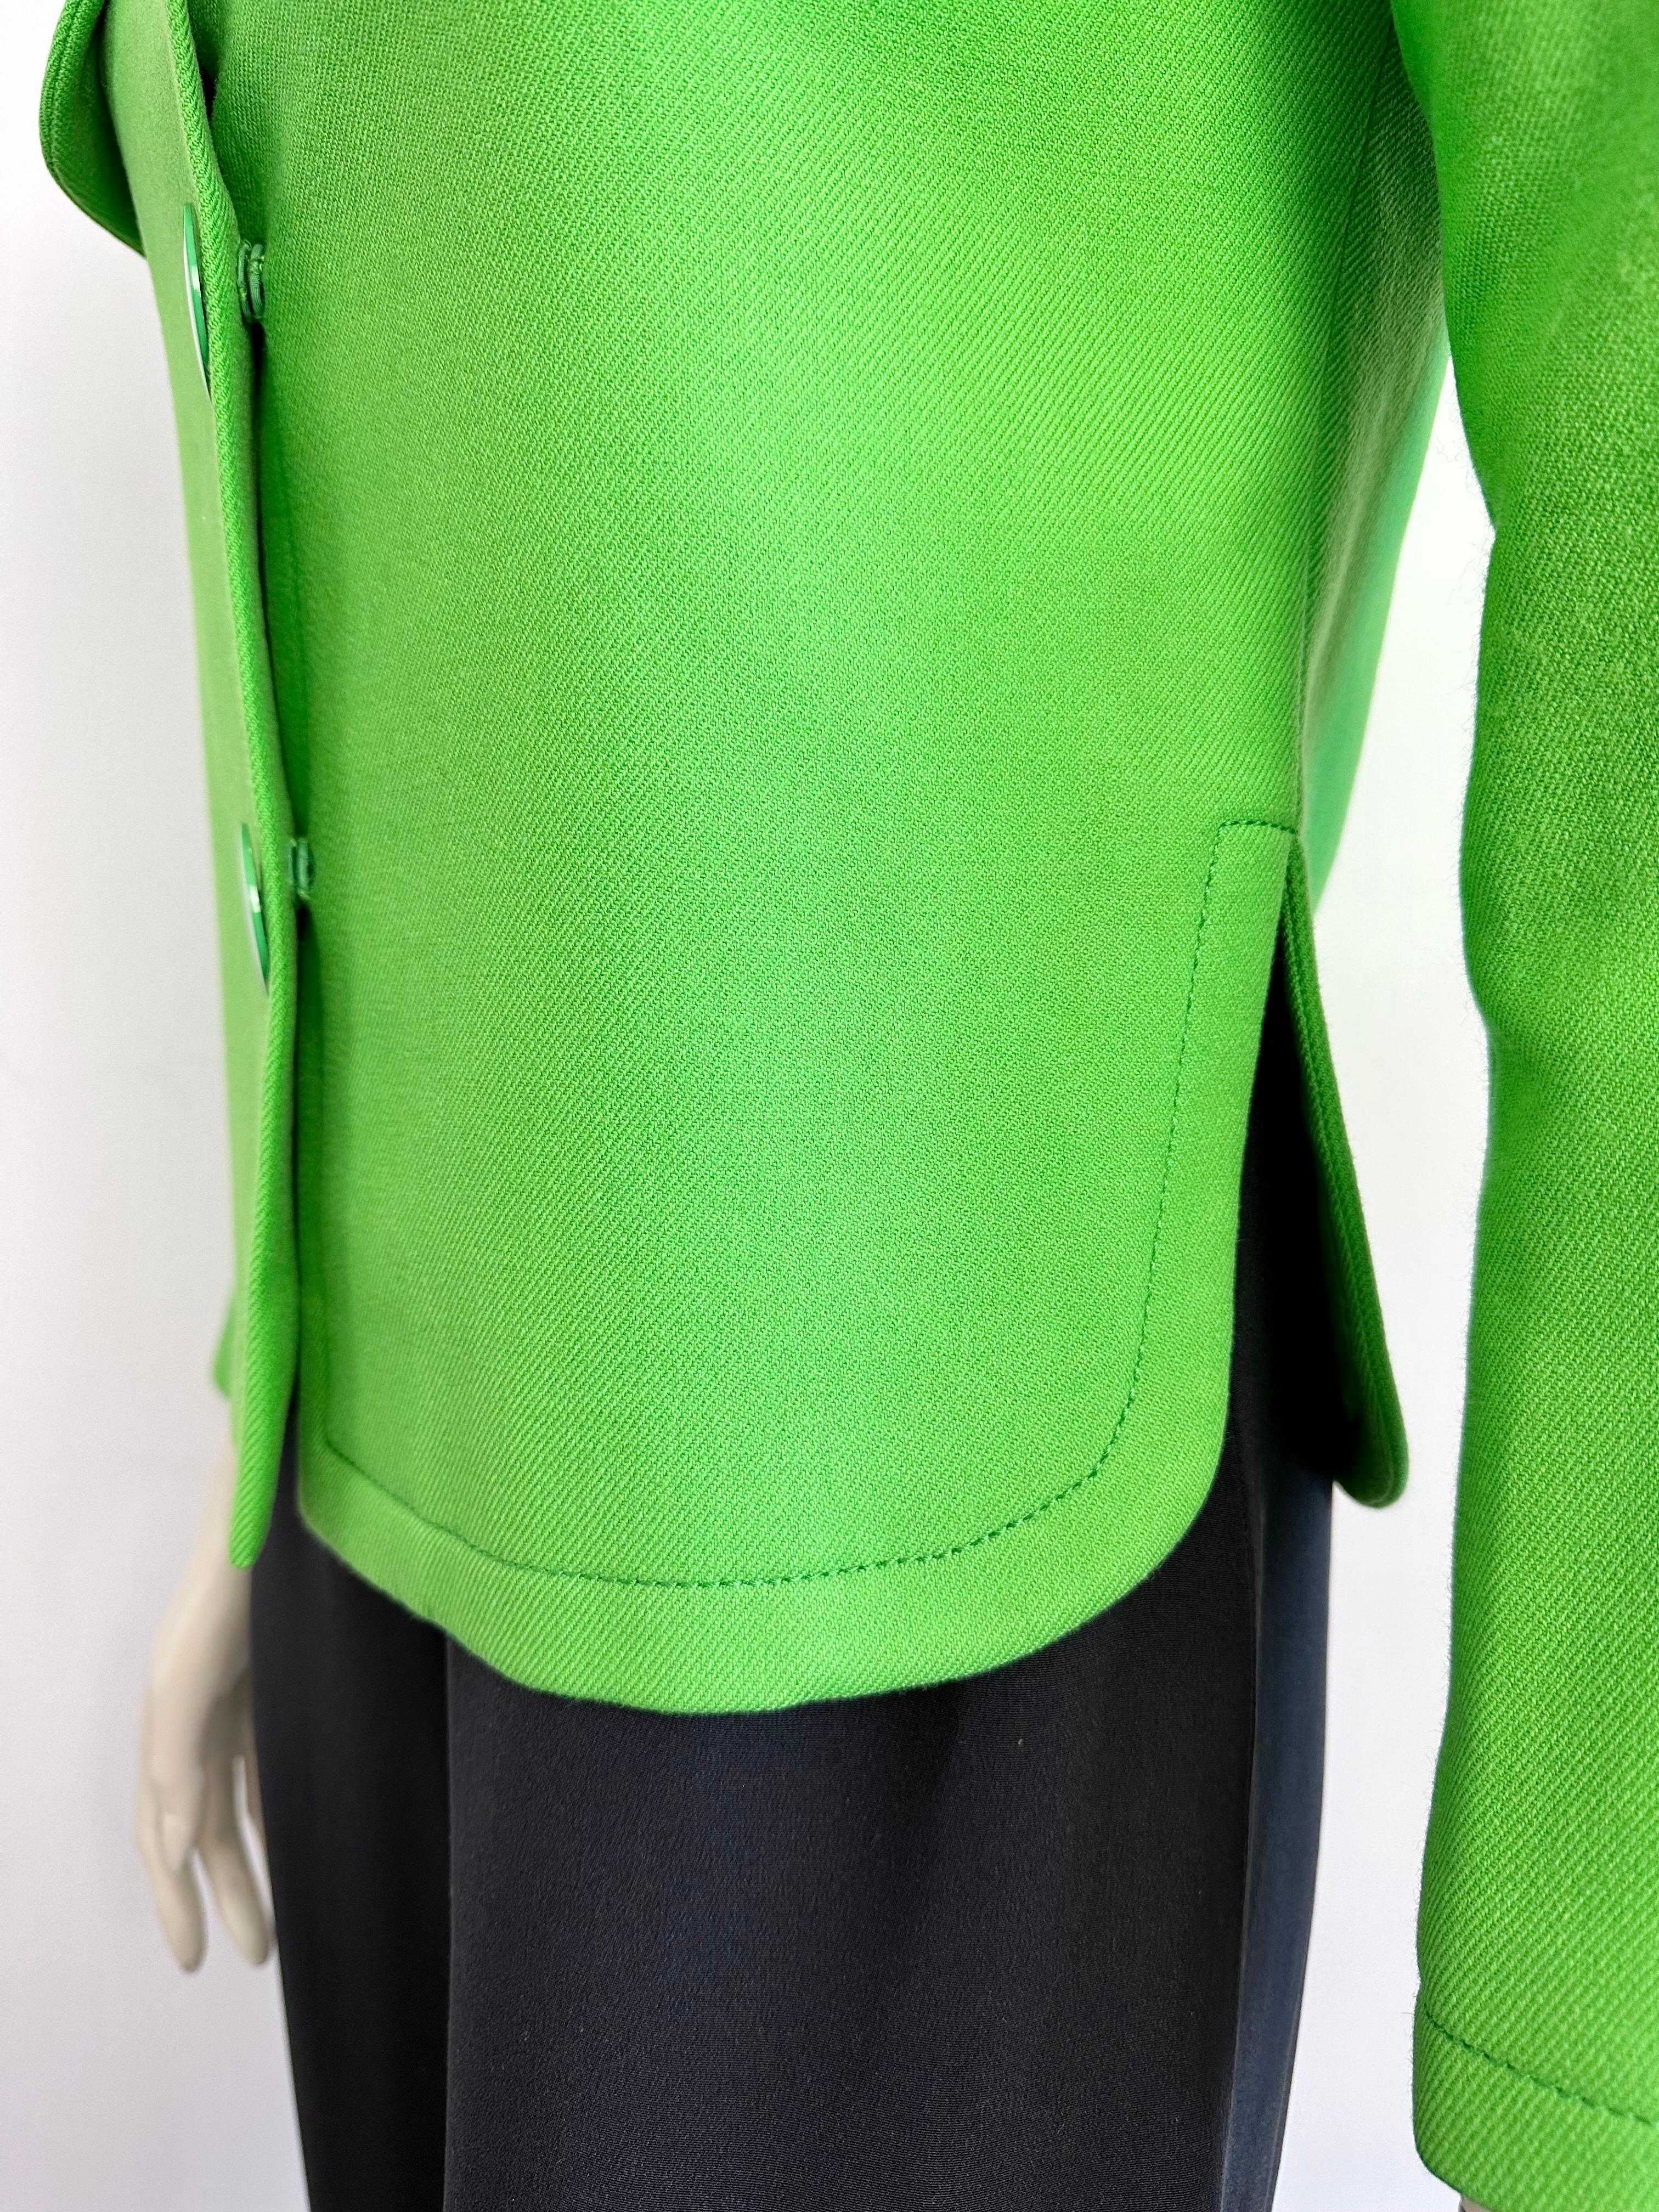 Pierre Cardin Promotion 1970s green wool jacket For Sale 4